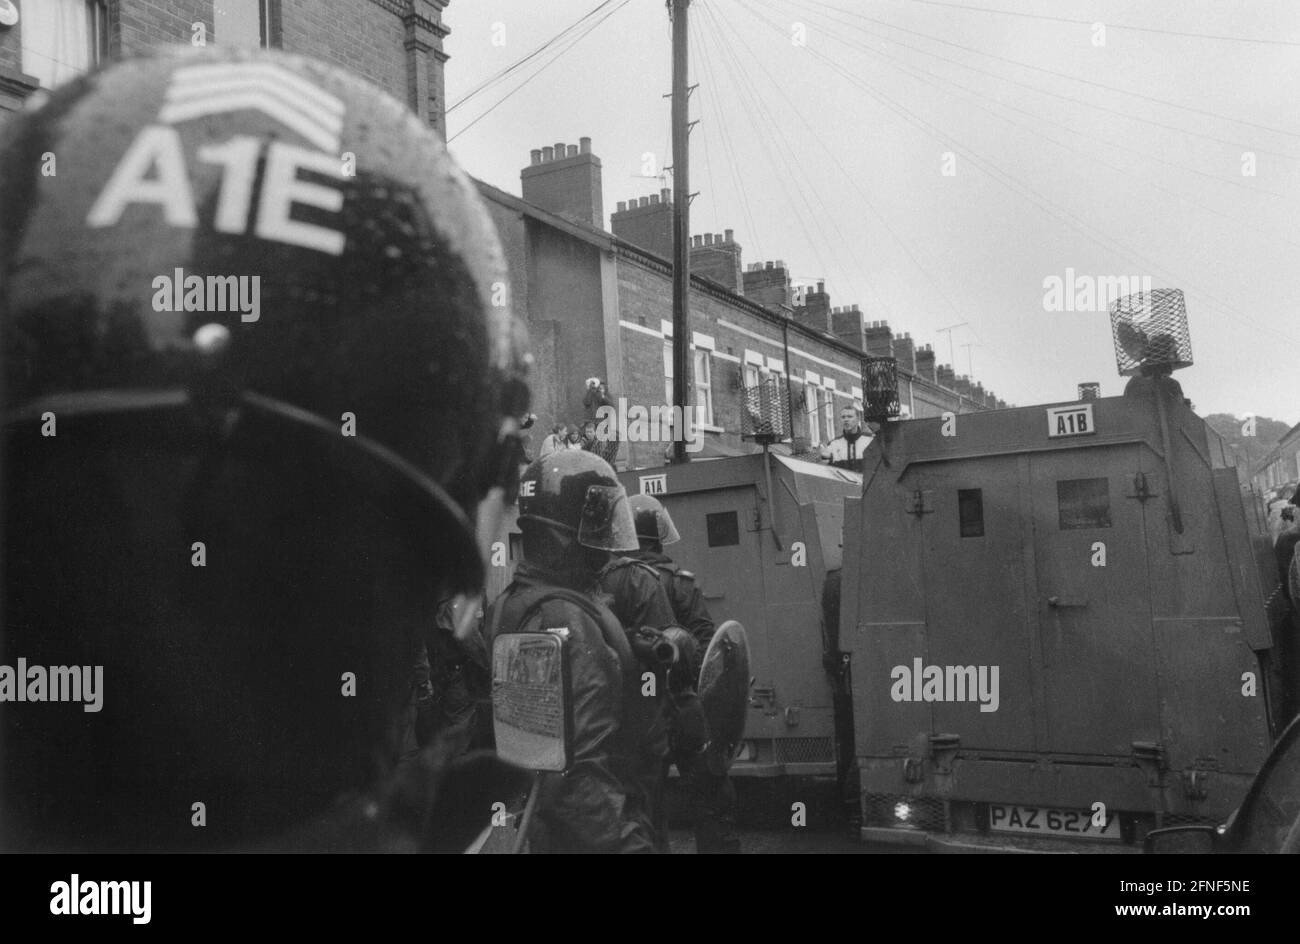 Operation der Northern Ireland Police (RUC, oder Royal Ulster Constabulary) auf der Lower Ormeau Road, während des marsches der 'Apprentice Boys' durch ein katholisches Gebiet von Belfast. [Automatisierte Übersetzung] Stockfoto